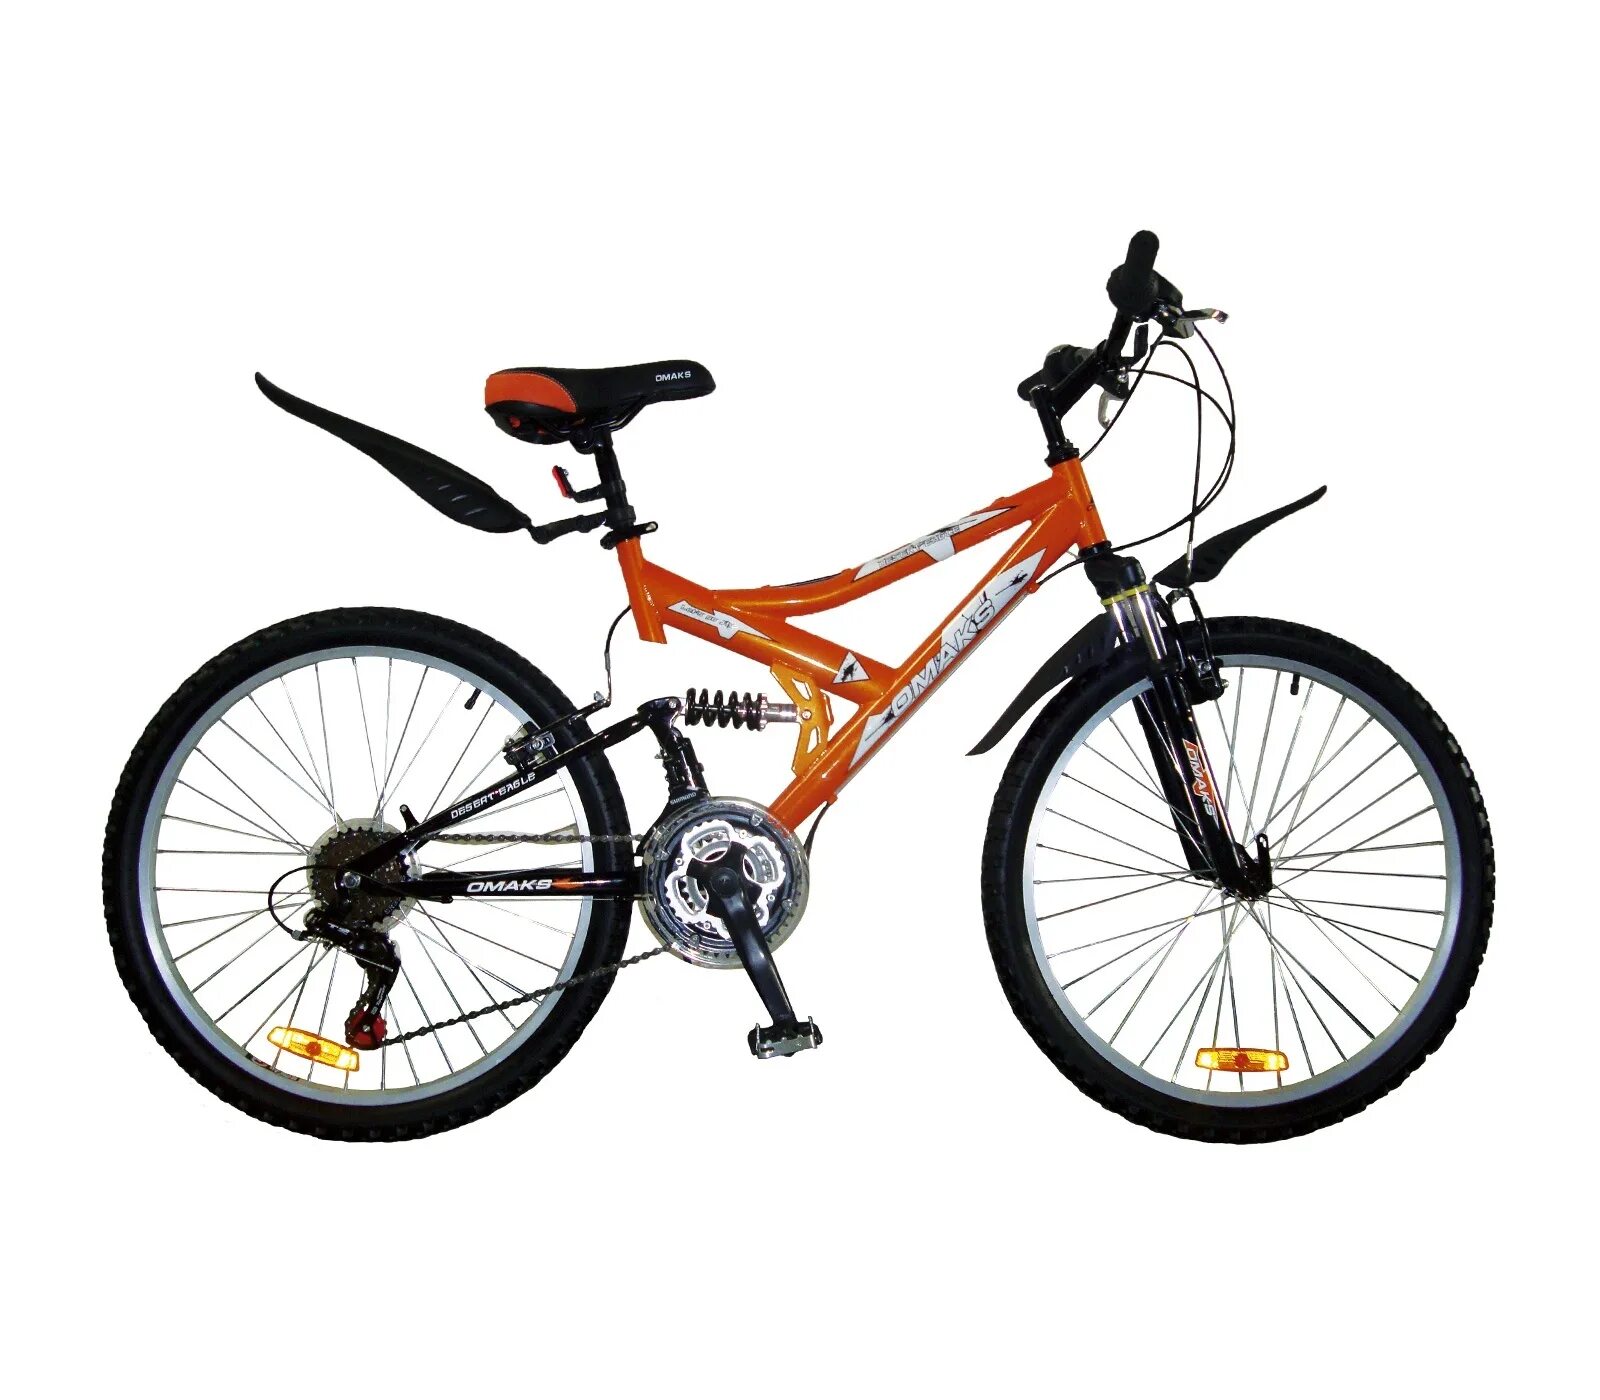 Стелс скоростной оранжевый. Велосипед стелс оранжевый скоростной. Велосипед.скоростной стелс 24 скорости. Велик стелс скоростной оранжевый. Велосипеды в орле магазины цены